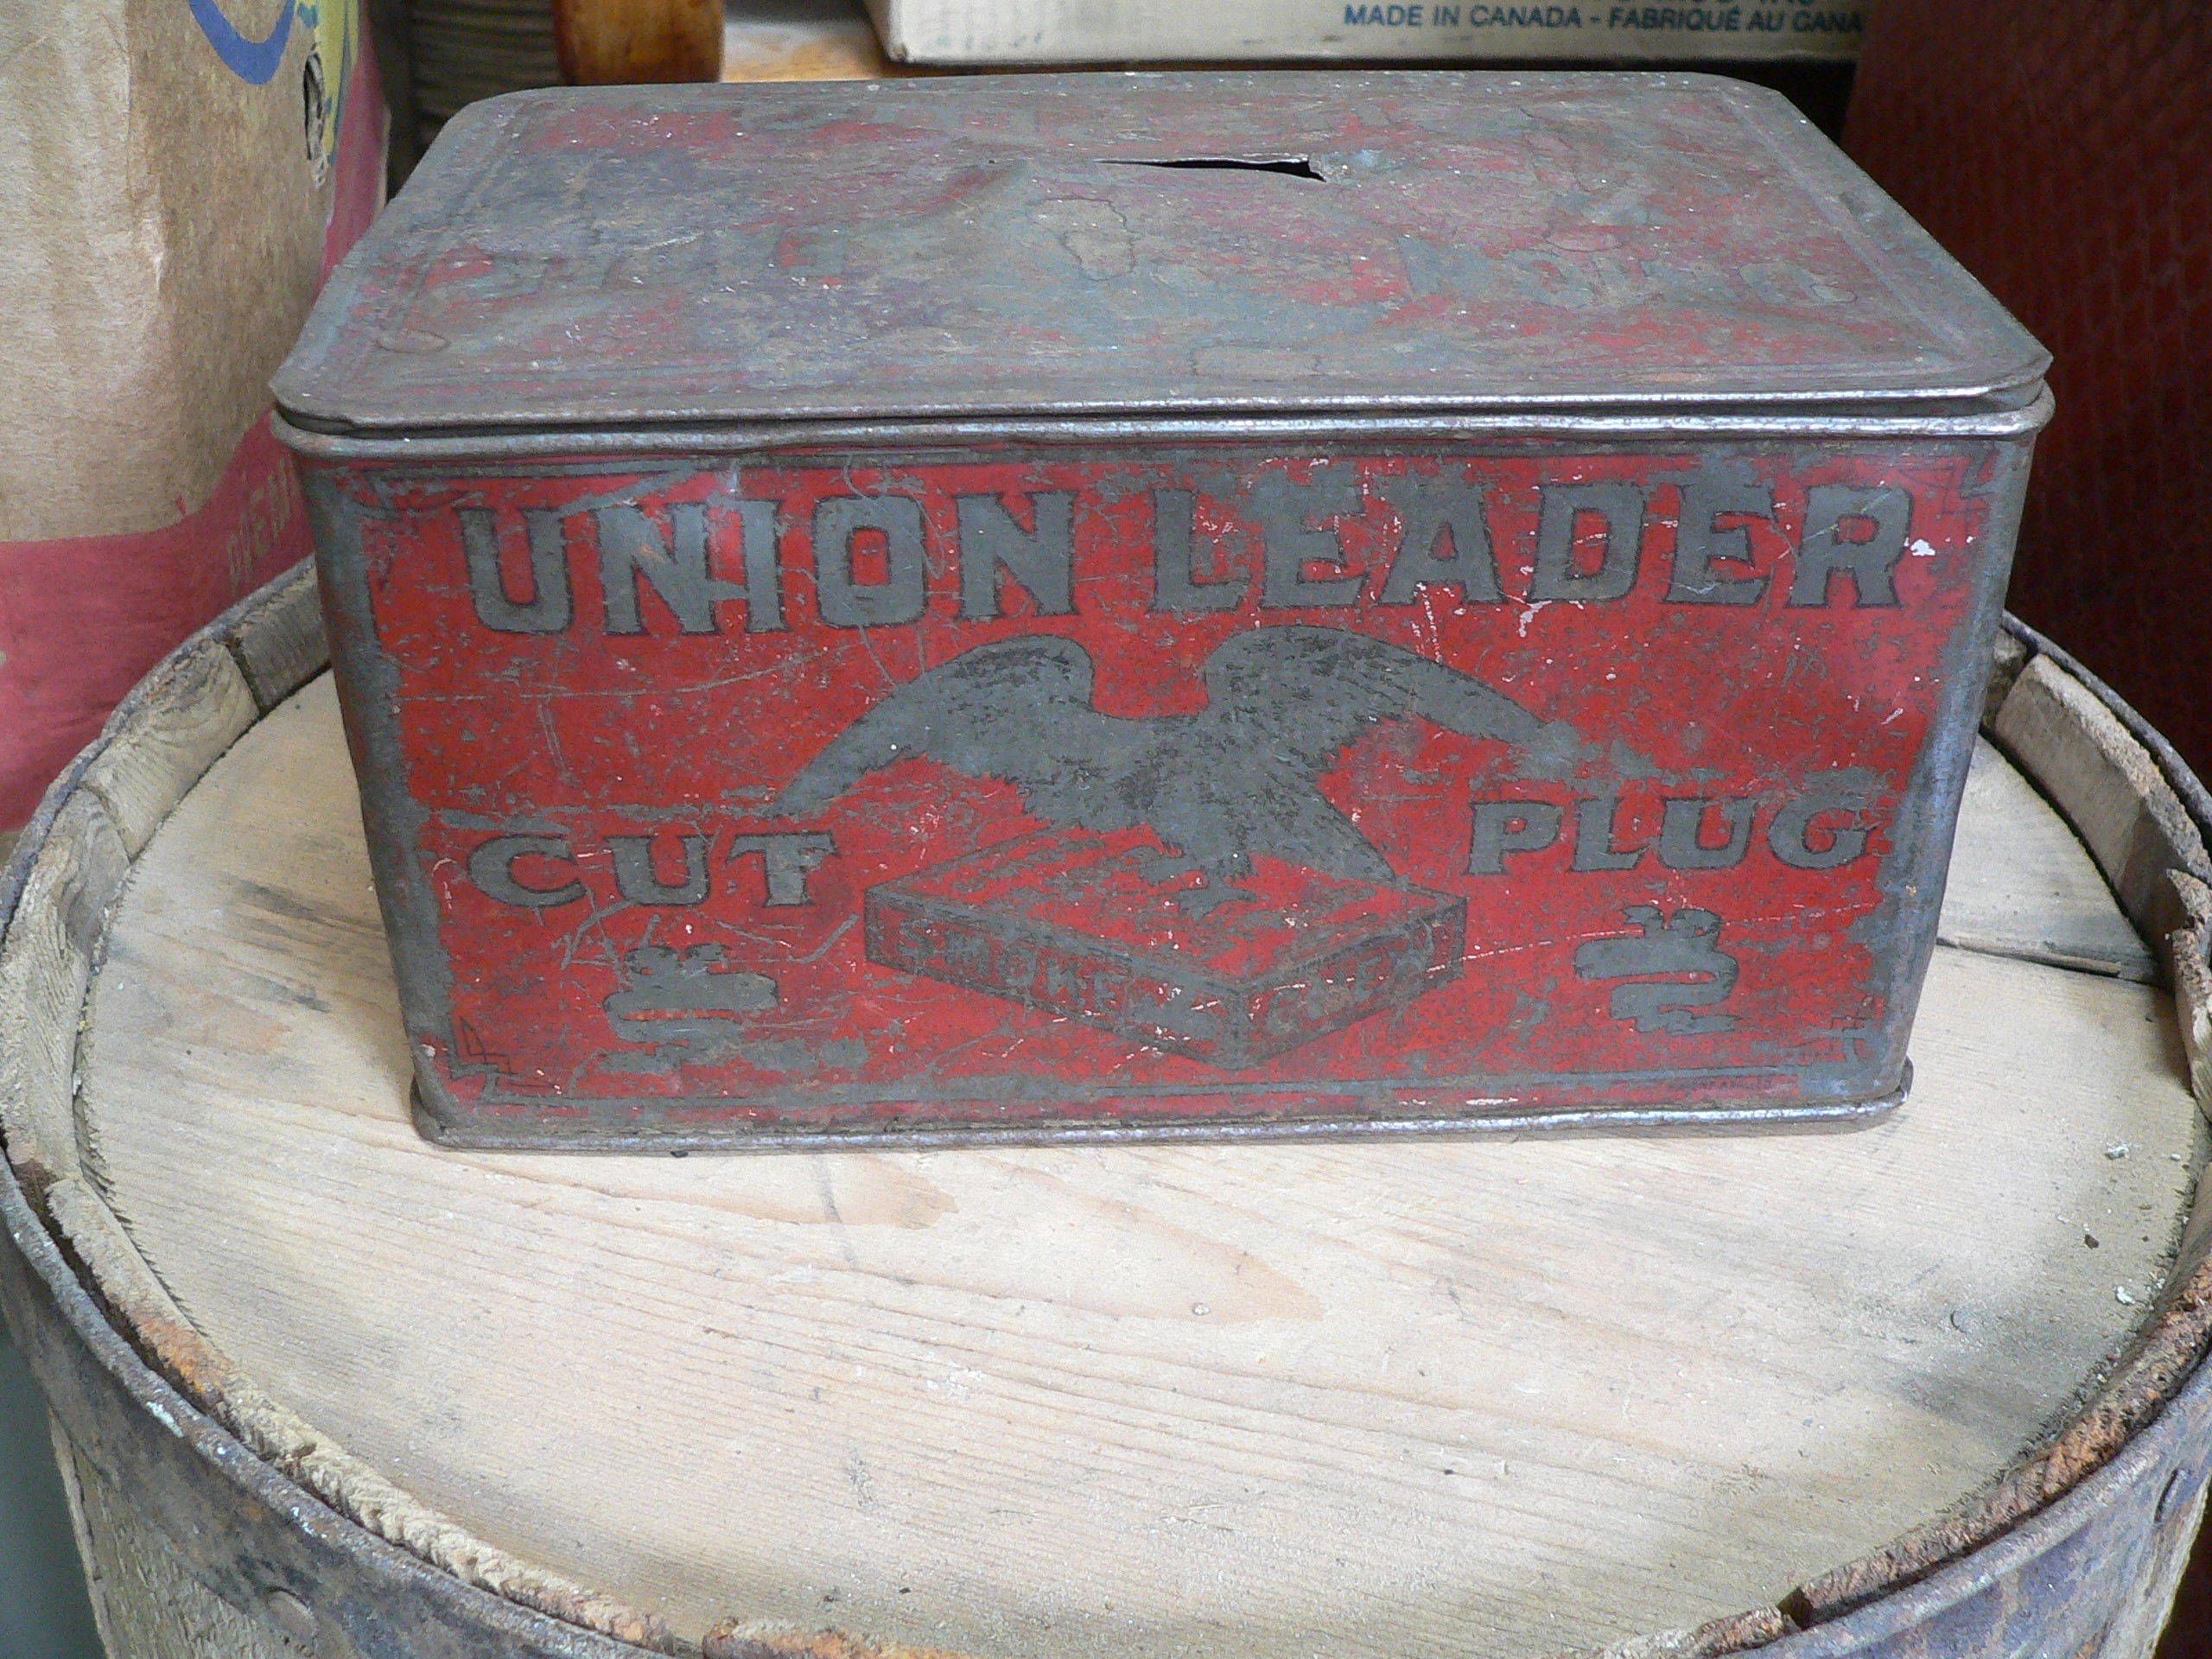 Boîte antique union leader cut plug # 7192